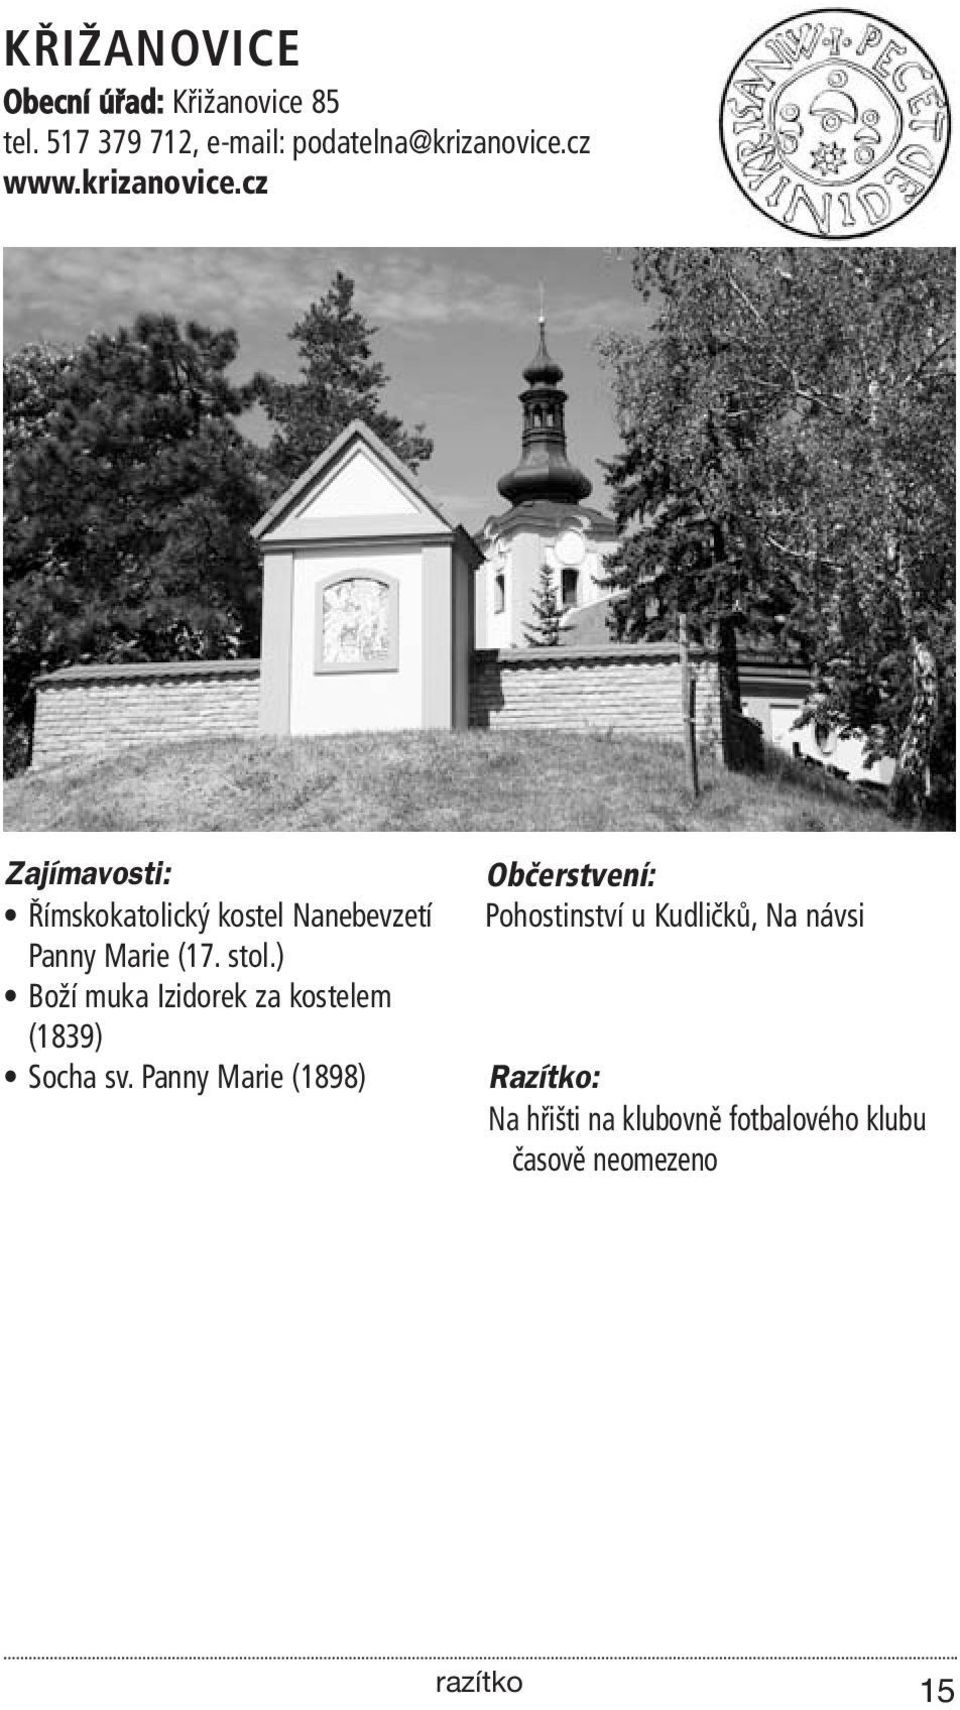 cz www.krizanovice.cz Římskokatolický kostel Nanebevzetí Panny Marie (17. stol.